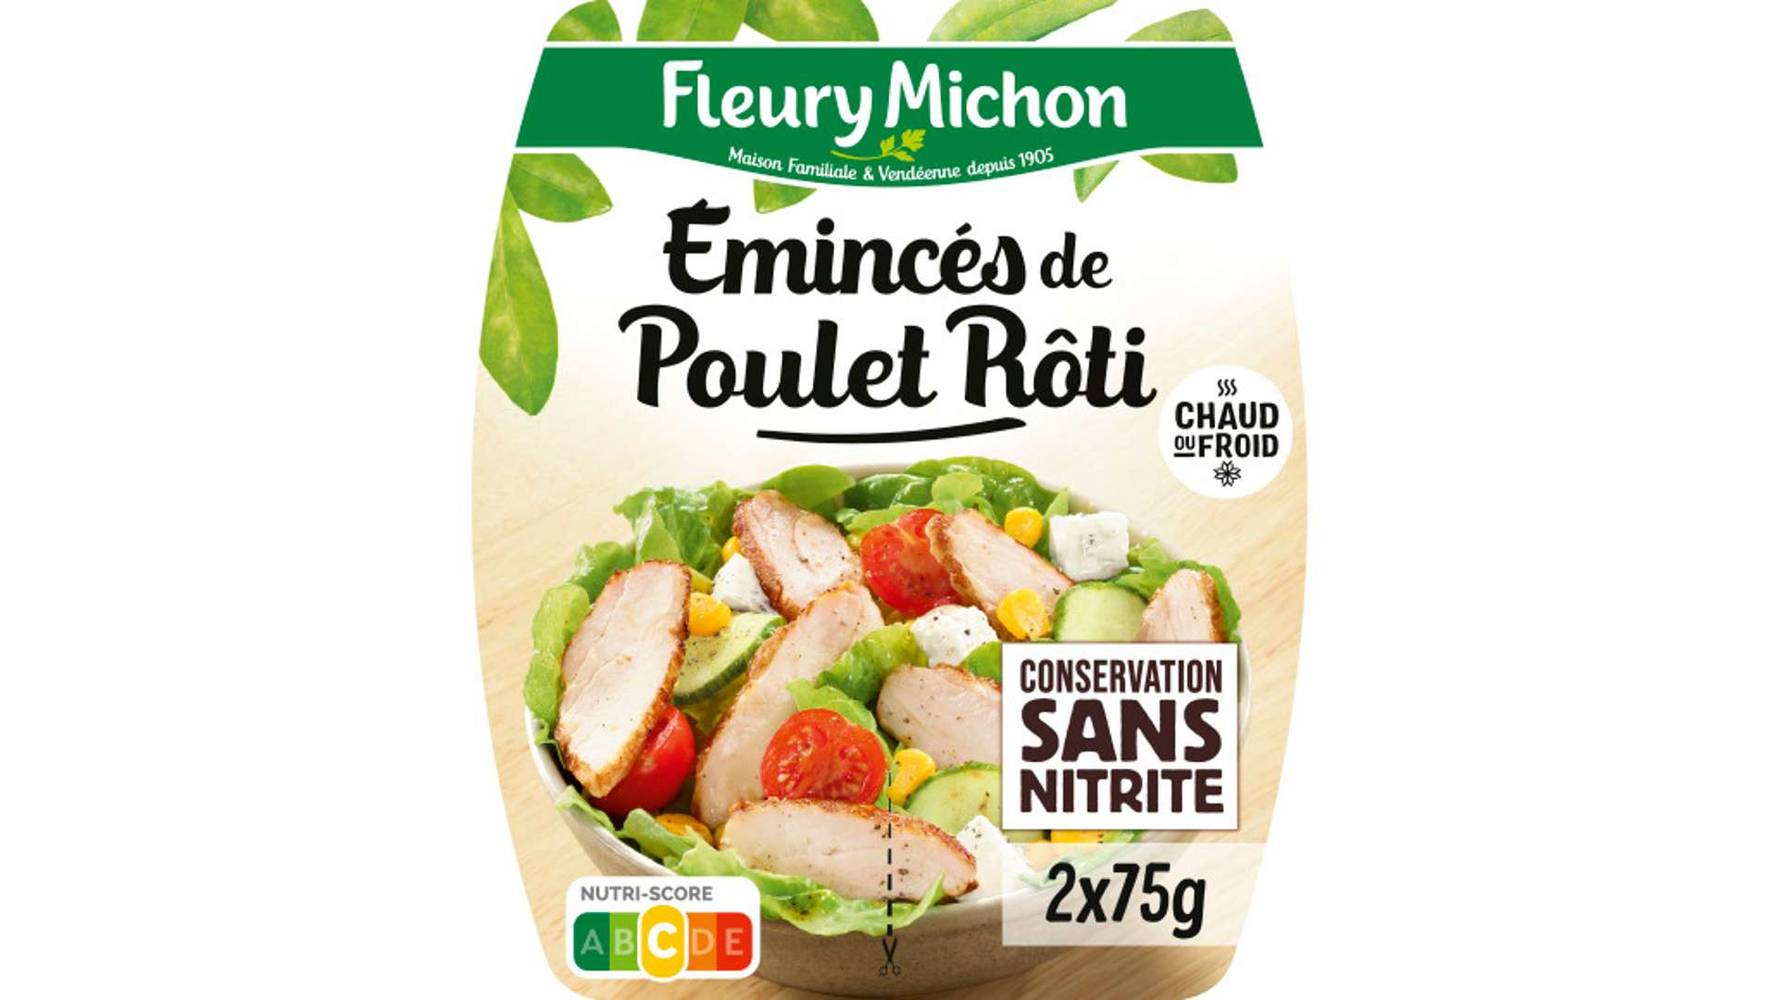 Fleury Michon - Émincés de poulet rôti